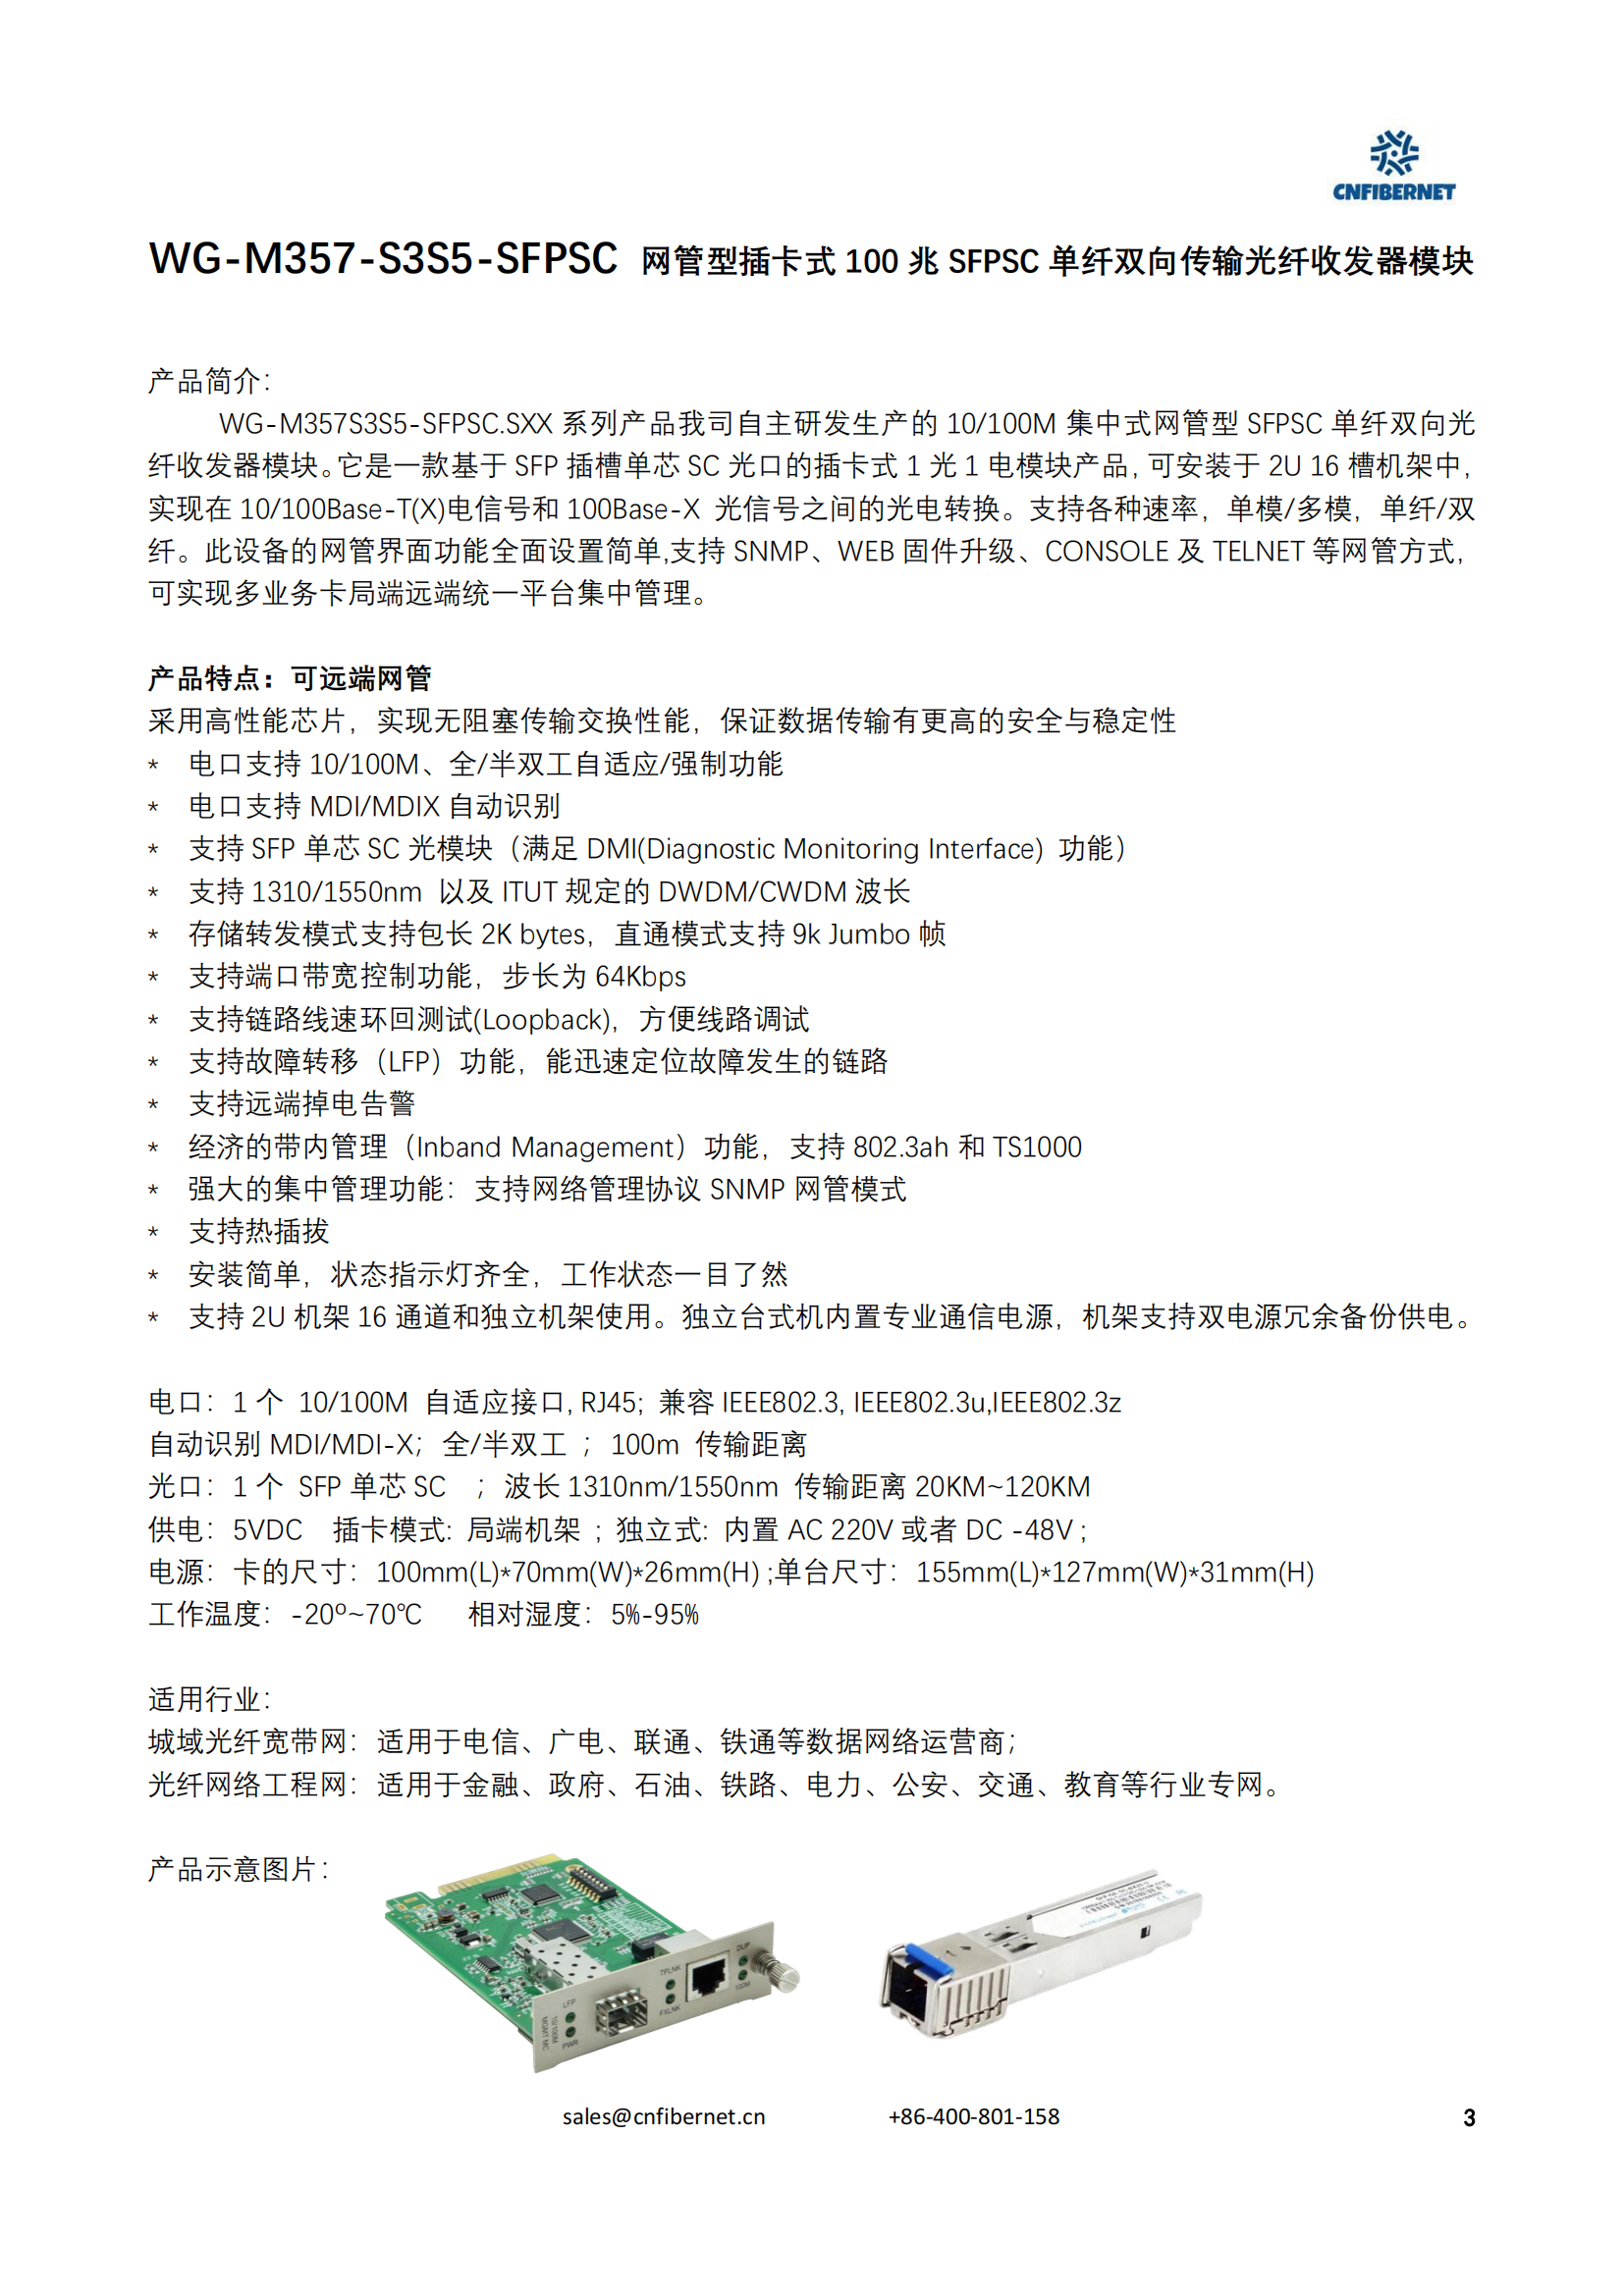 WG-M357-S3S5-SFPSC.S100 Network managed plug-in card 100M SFPSC single fiber bidirectional transmission optical fiber transceiver module 100km